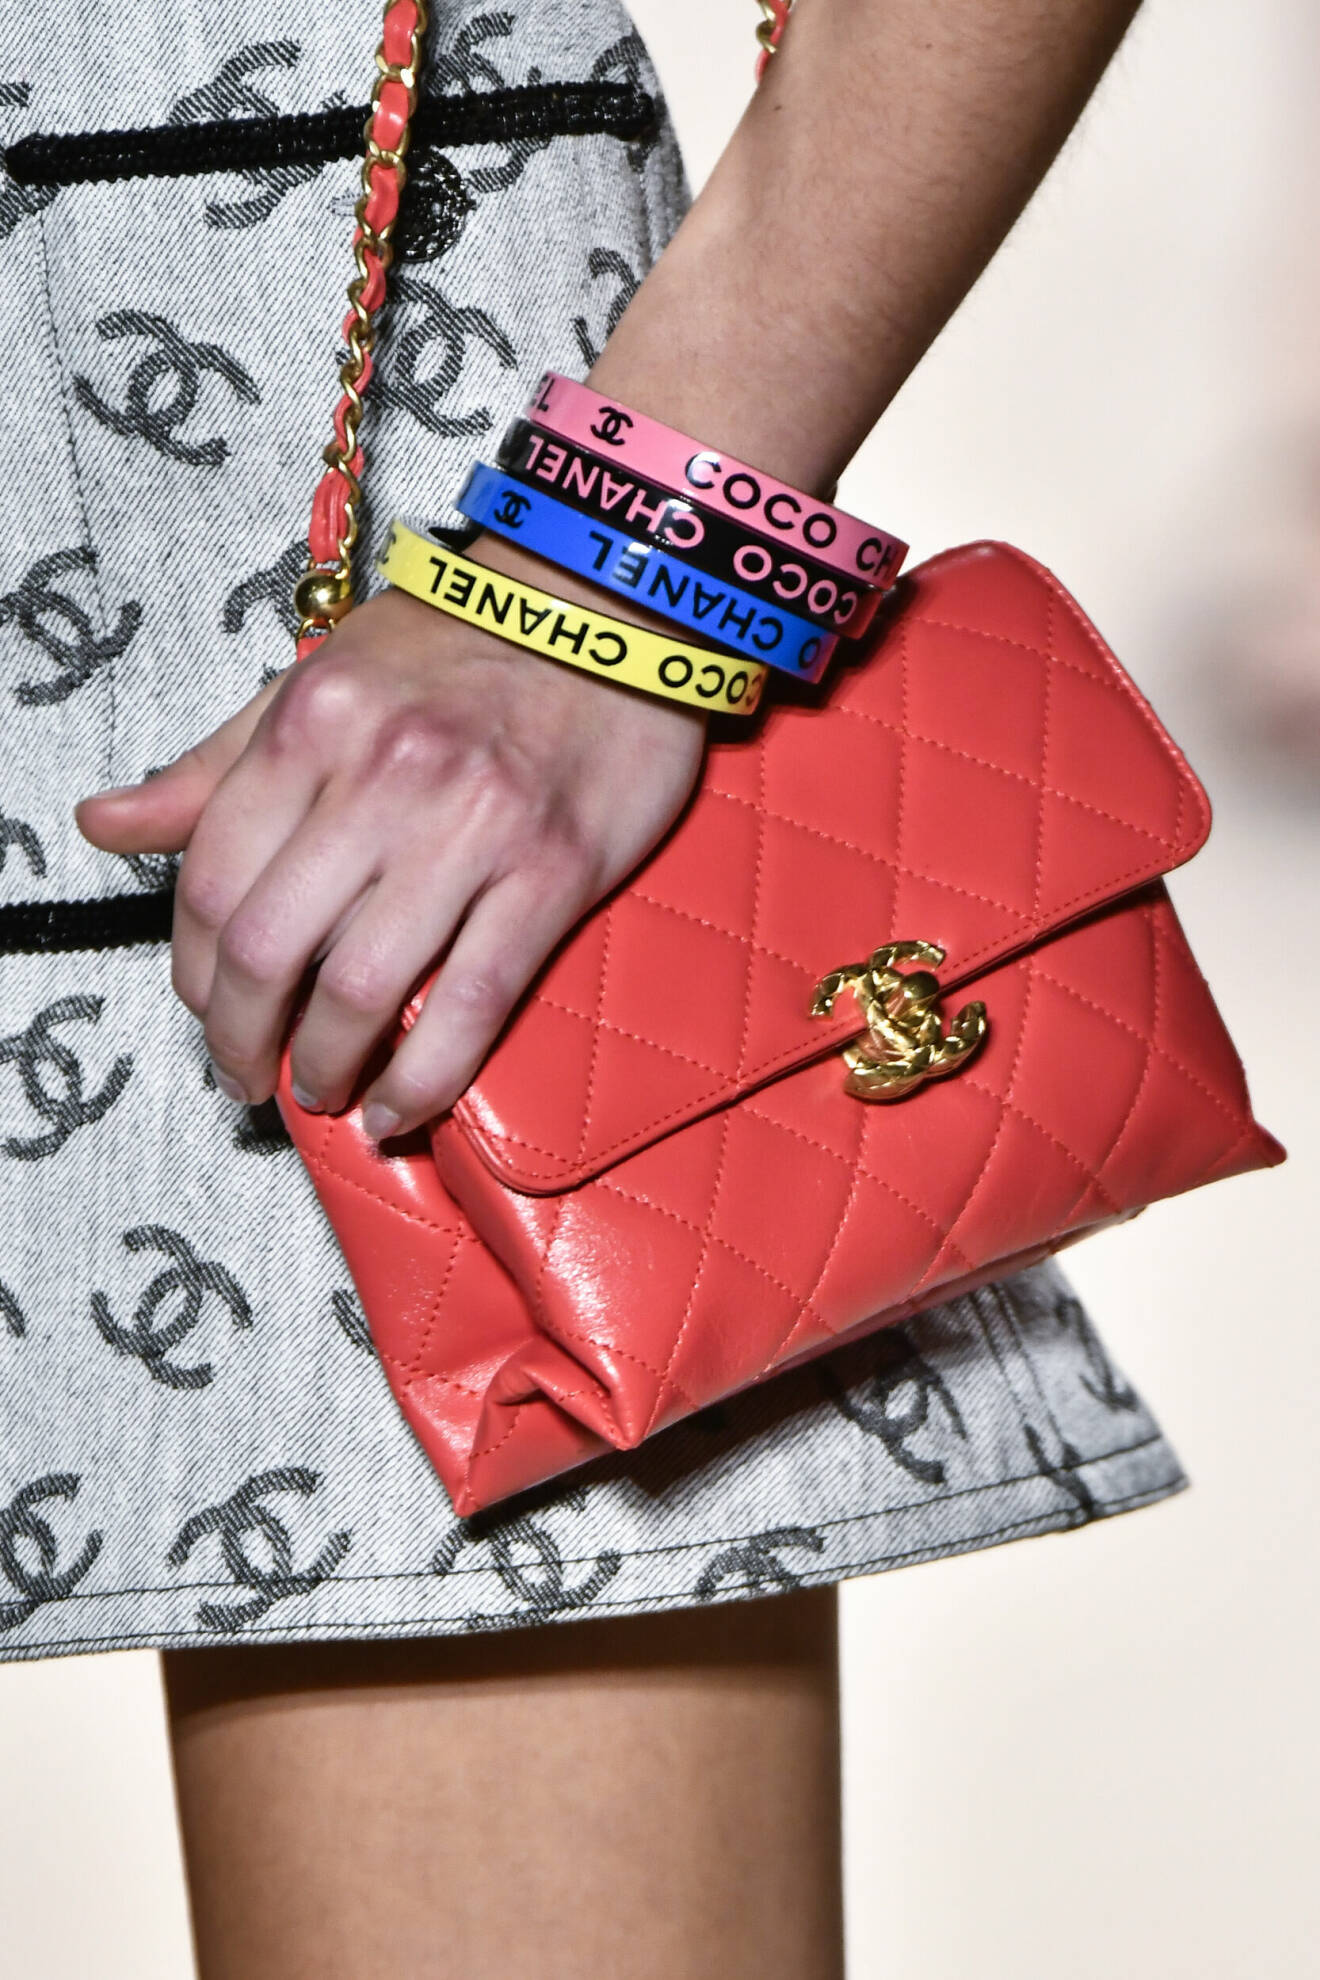 Färgstarka armband på Chanels visning.